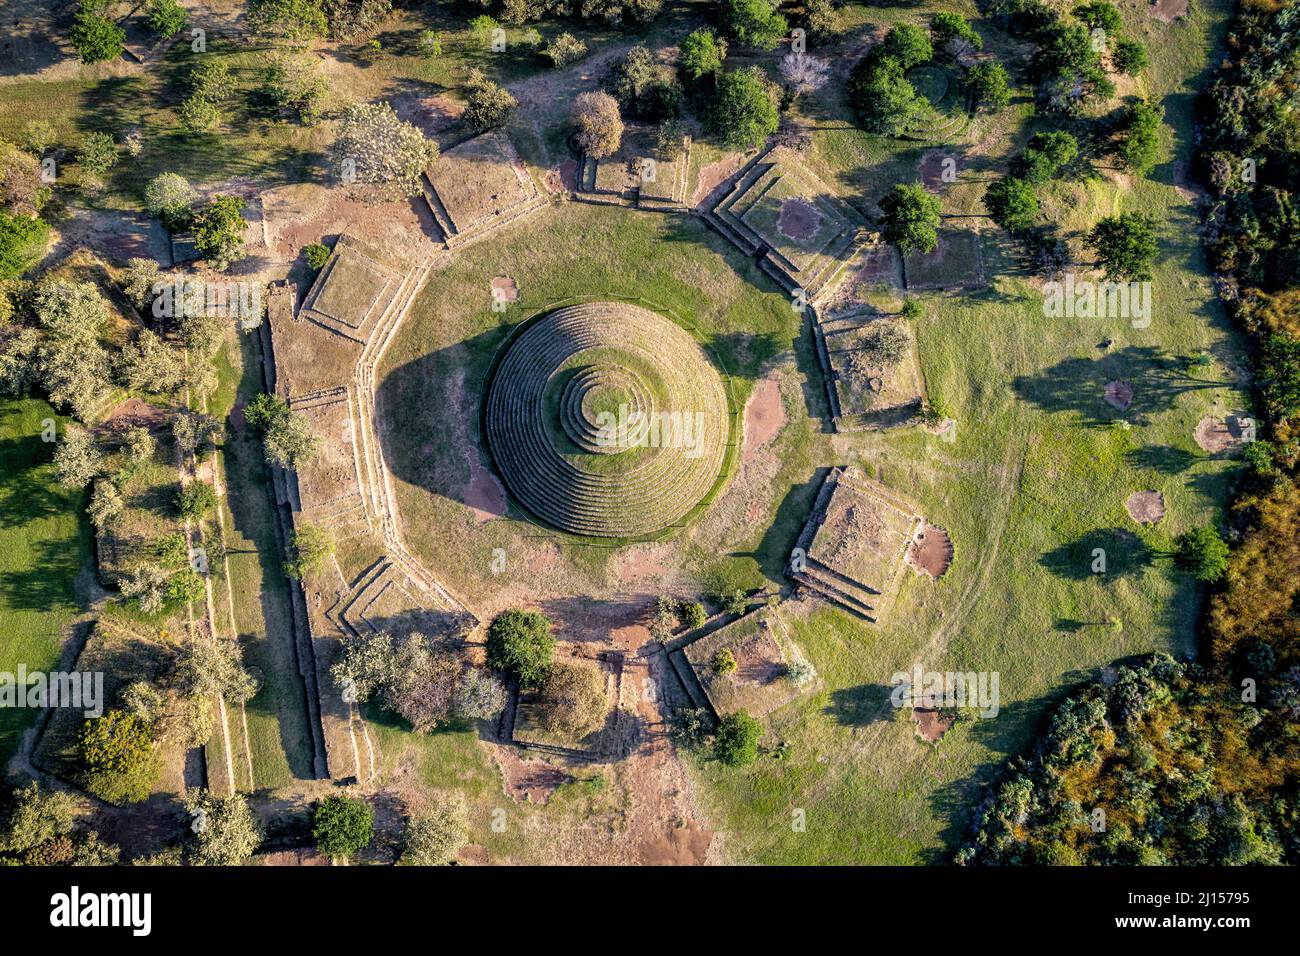 Vista aérea de los Guachimontones, un sitio arqueológico precolombino cerca de Teuchitlan, Jalisco, México. Foto de stock